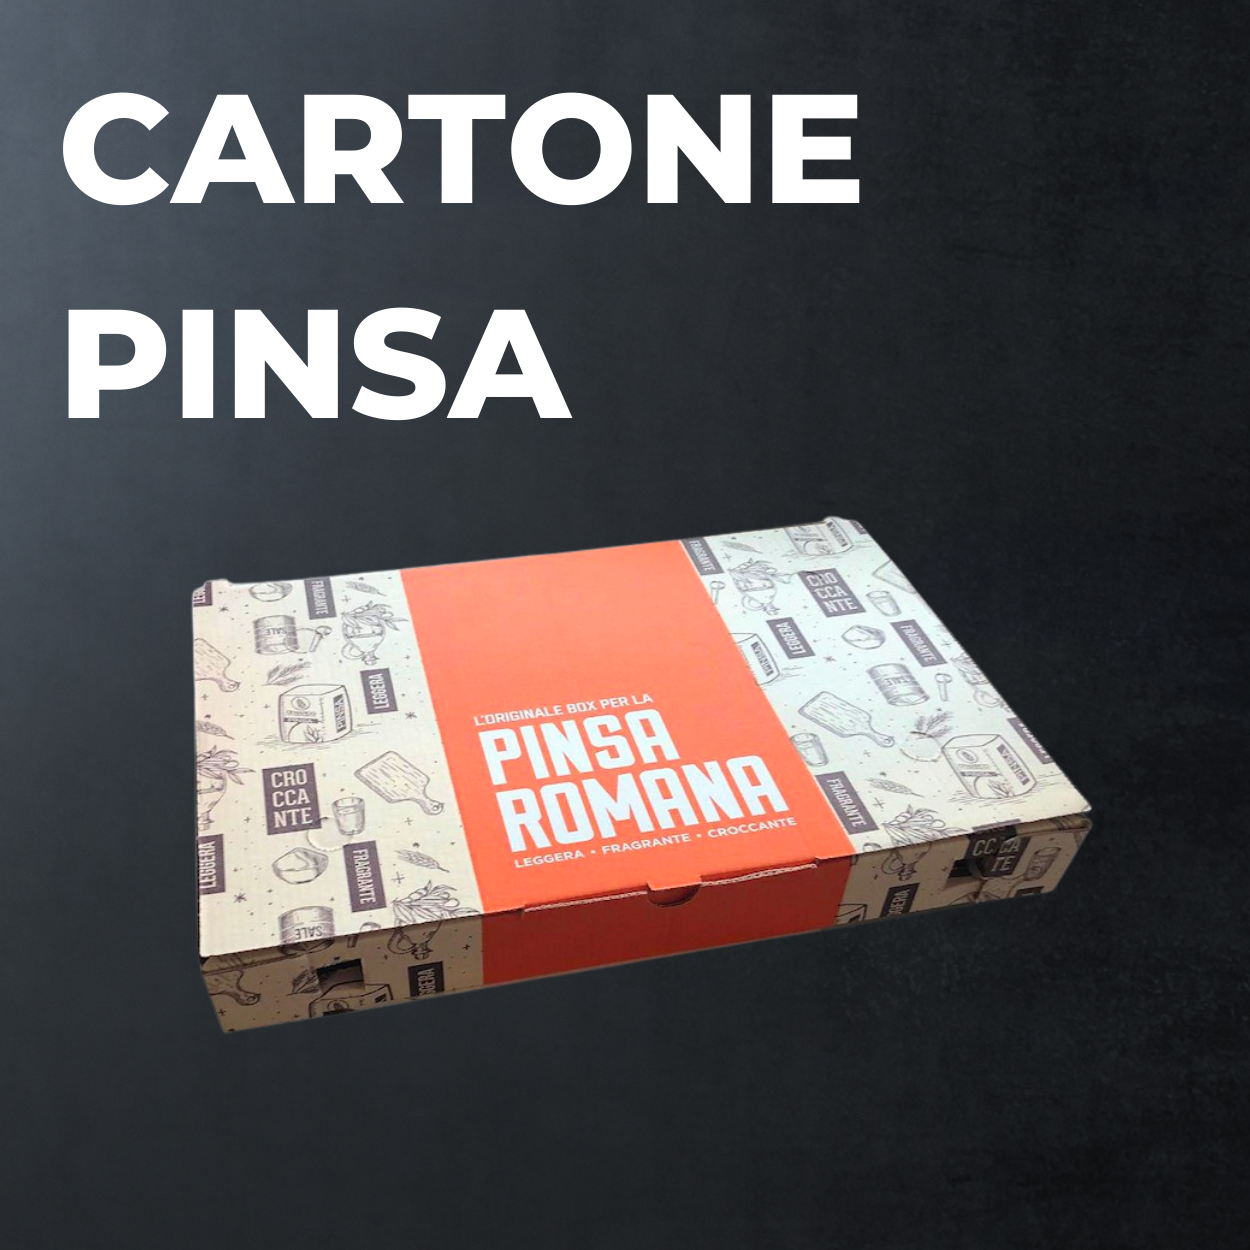 Cartone Pinsa Romana - Personalizzata - 200 pezzi